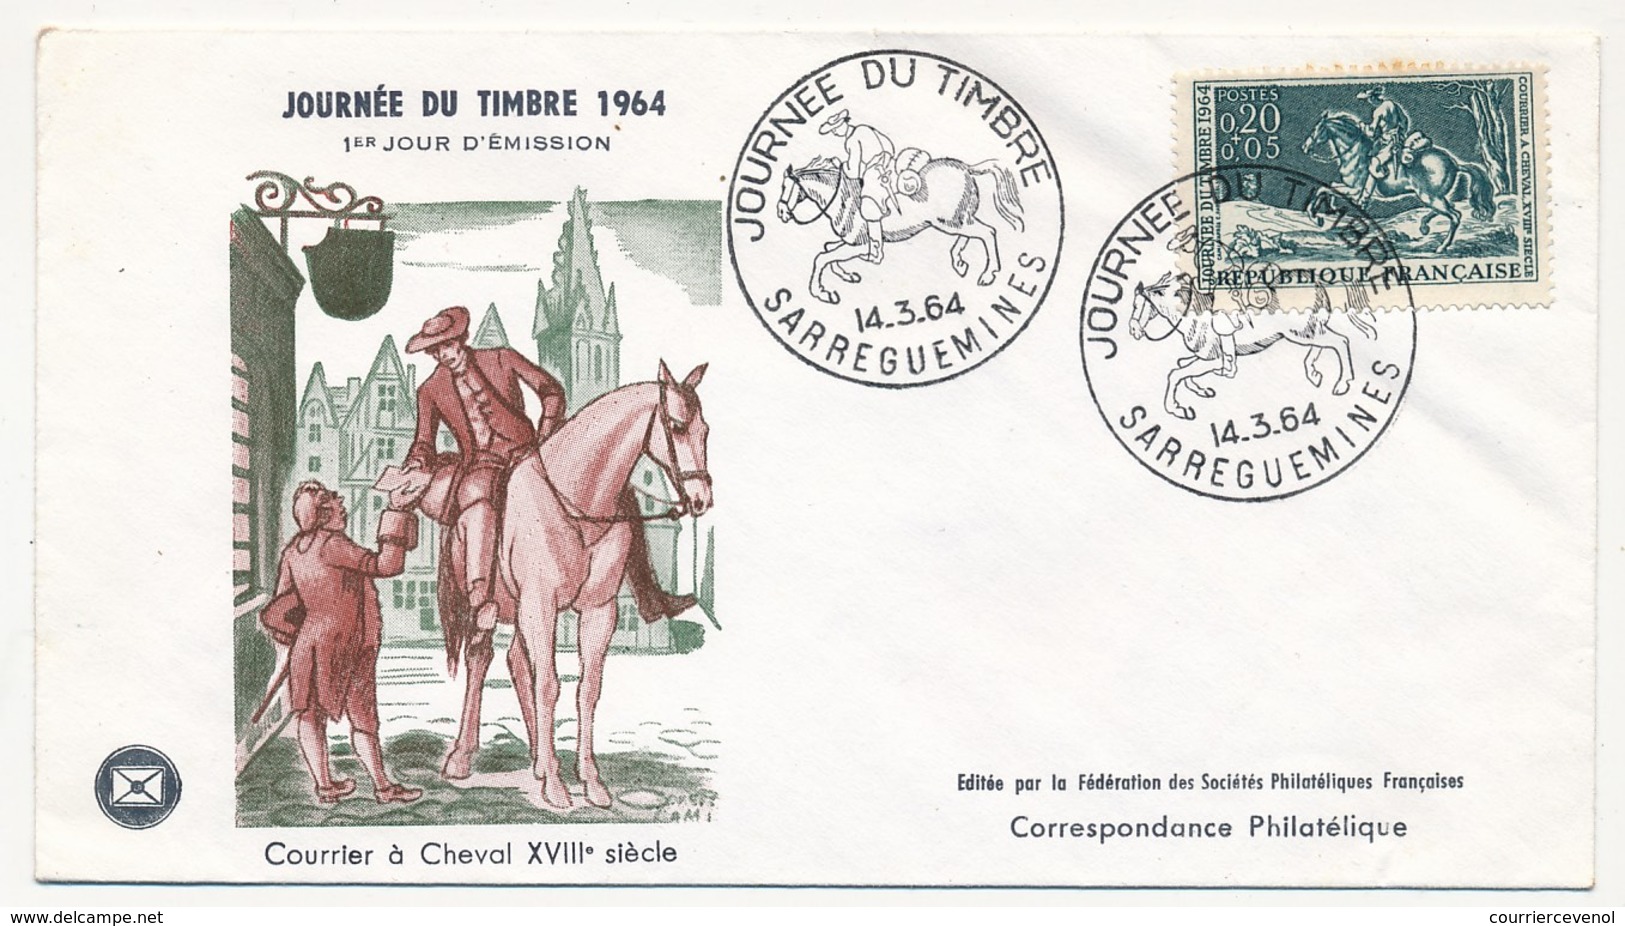 FRANCE - Enveloppe FDC - Journée Du Timbre 1964 (Courrier à Cheval XVIIIeme Siècle) - SARREGUEMINES 14.3.1964 - Stamp's Day